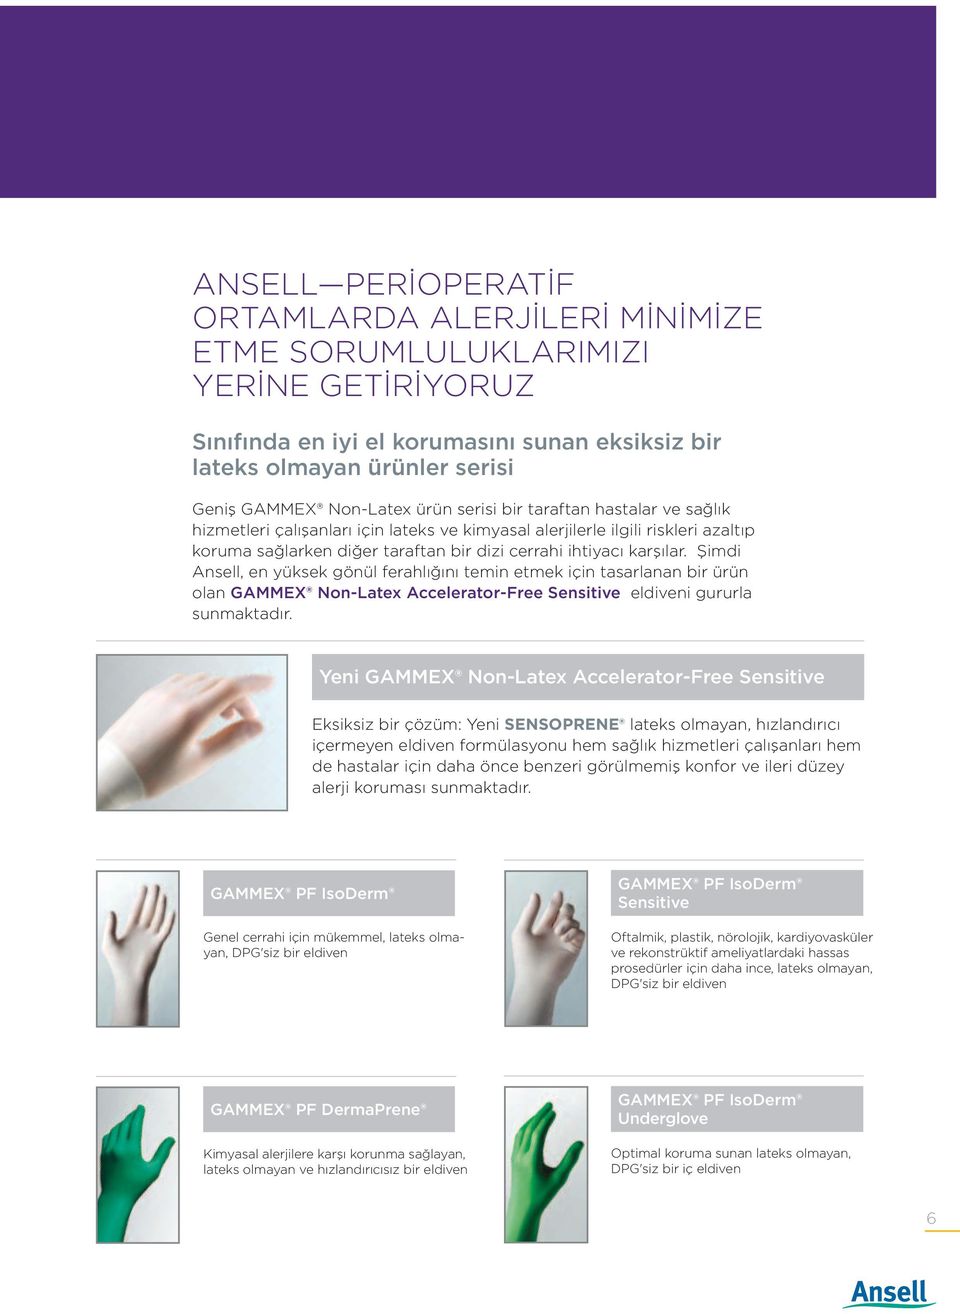 Şimdi Ansell, en yüksek gönül ferahlığını temin etmek için tasarlanan bir ürün olan GAMMEX Non-Latex Accelerator-Free Sensitive eldiveni gururla sunmaktadır.